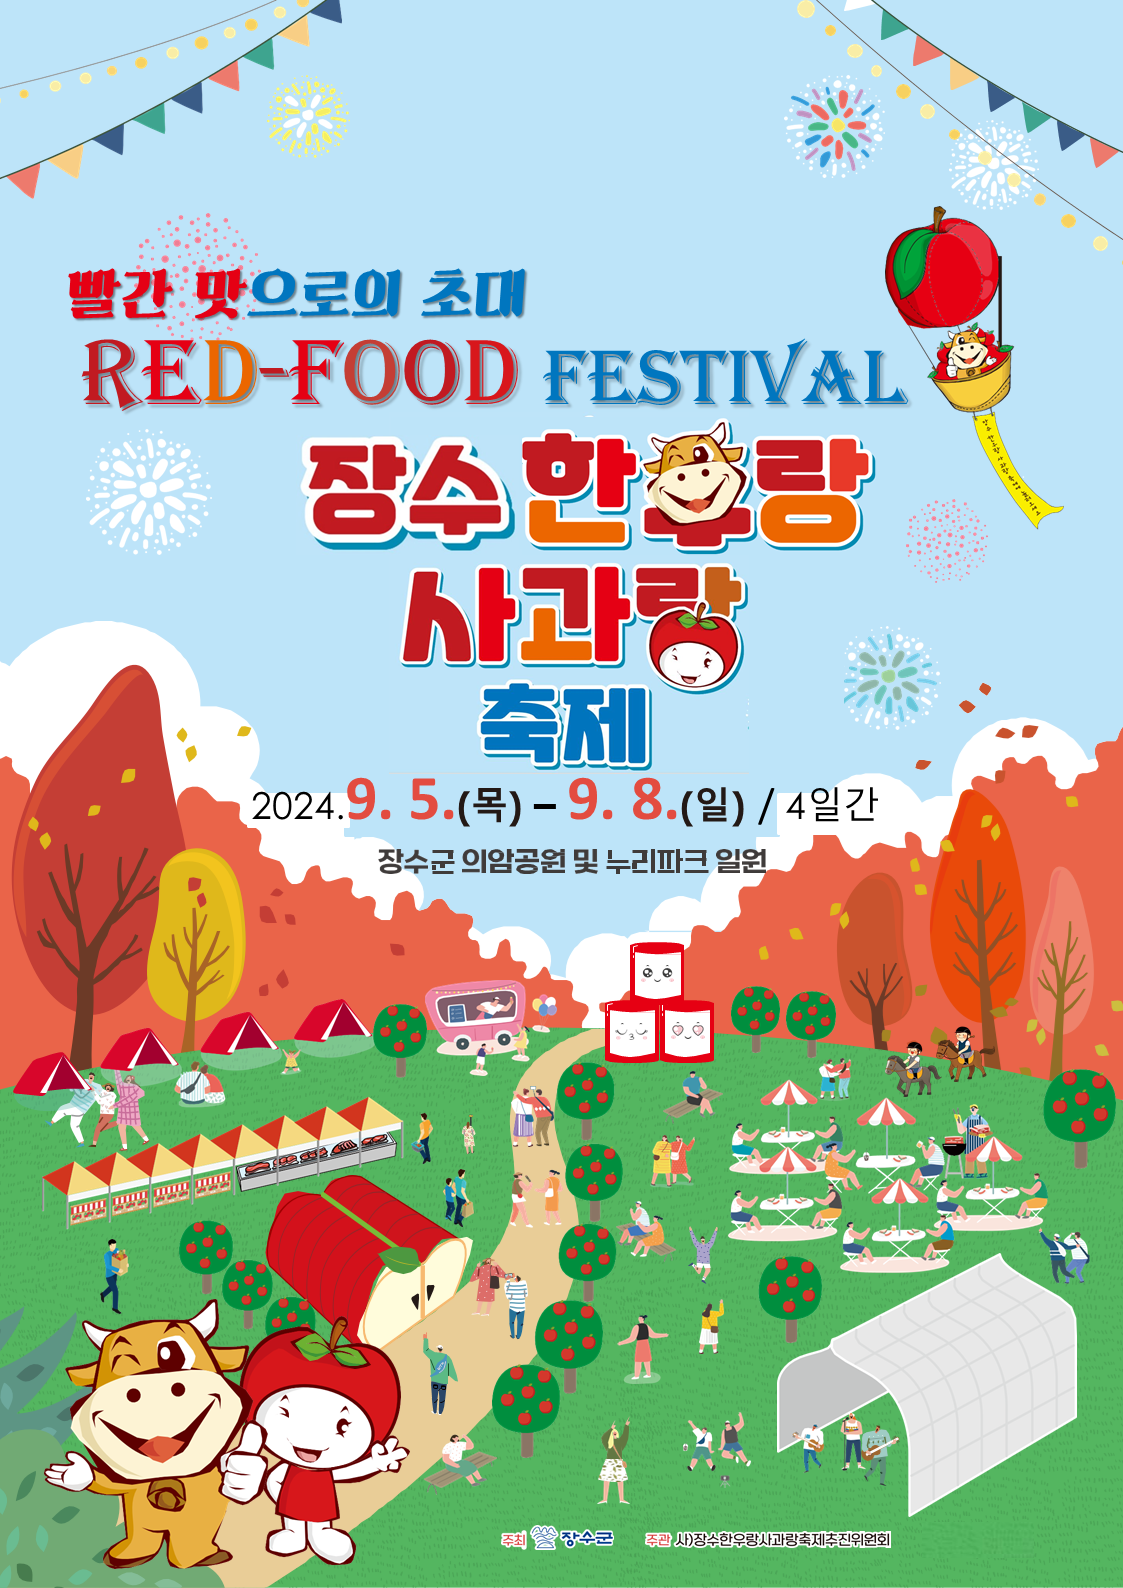 2024년 RED FOOD 페스티벌 제18회 장수한우랑사과랑축제 쇼츠 영상 공모전 참가 및 홍보 사진